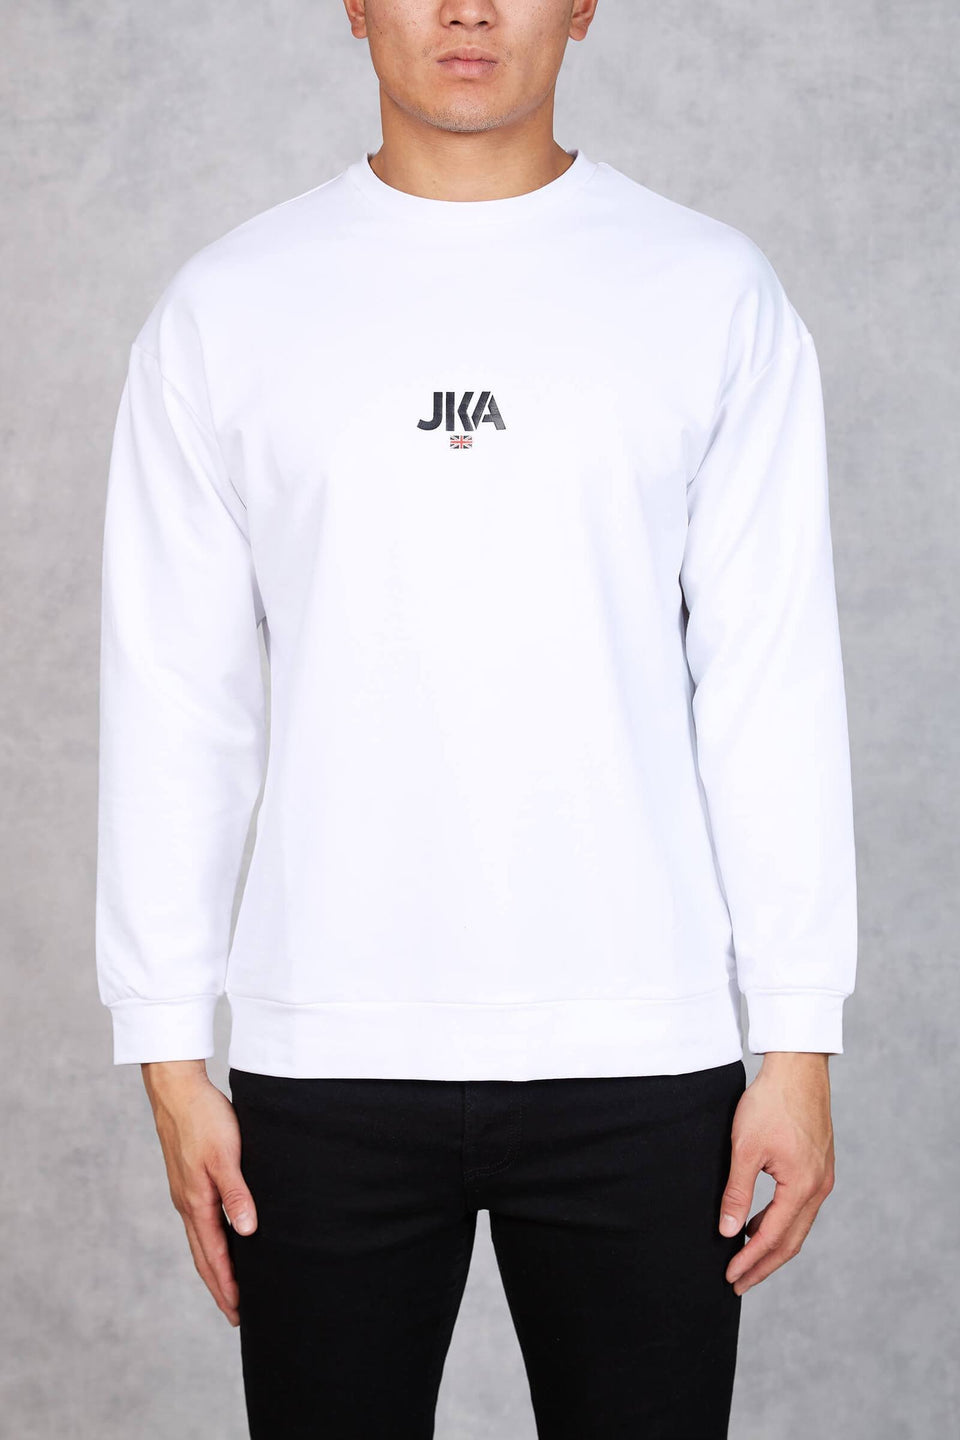 JKA British Oversized Long Sleeve T-Shirt - White